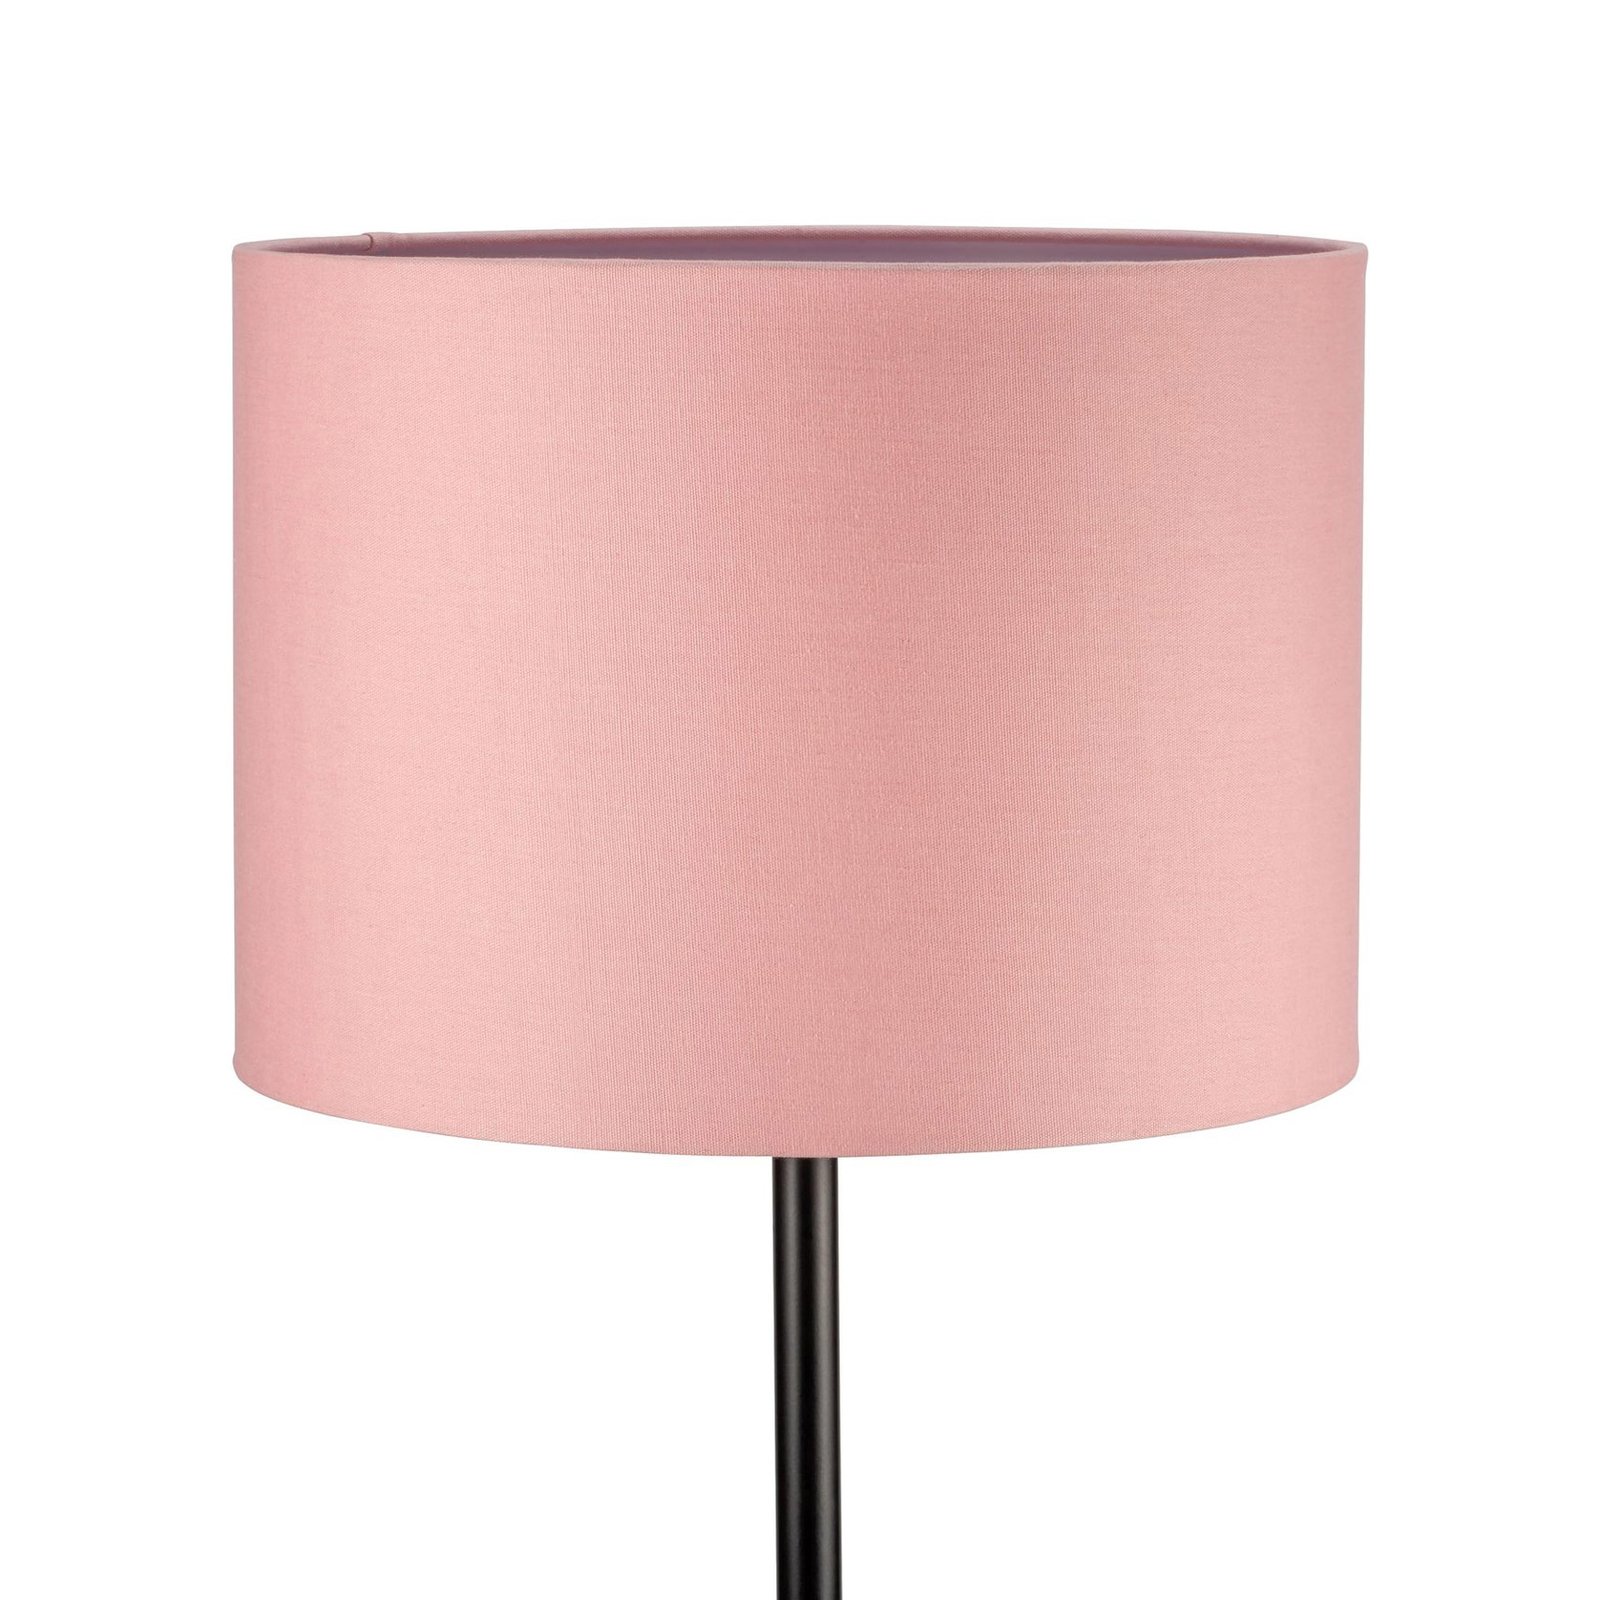 Pauleen Grand Reverie stojací lampa v růžové/černé